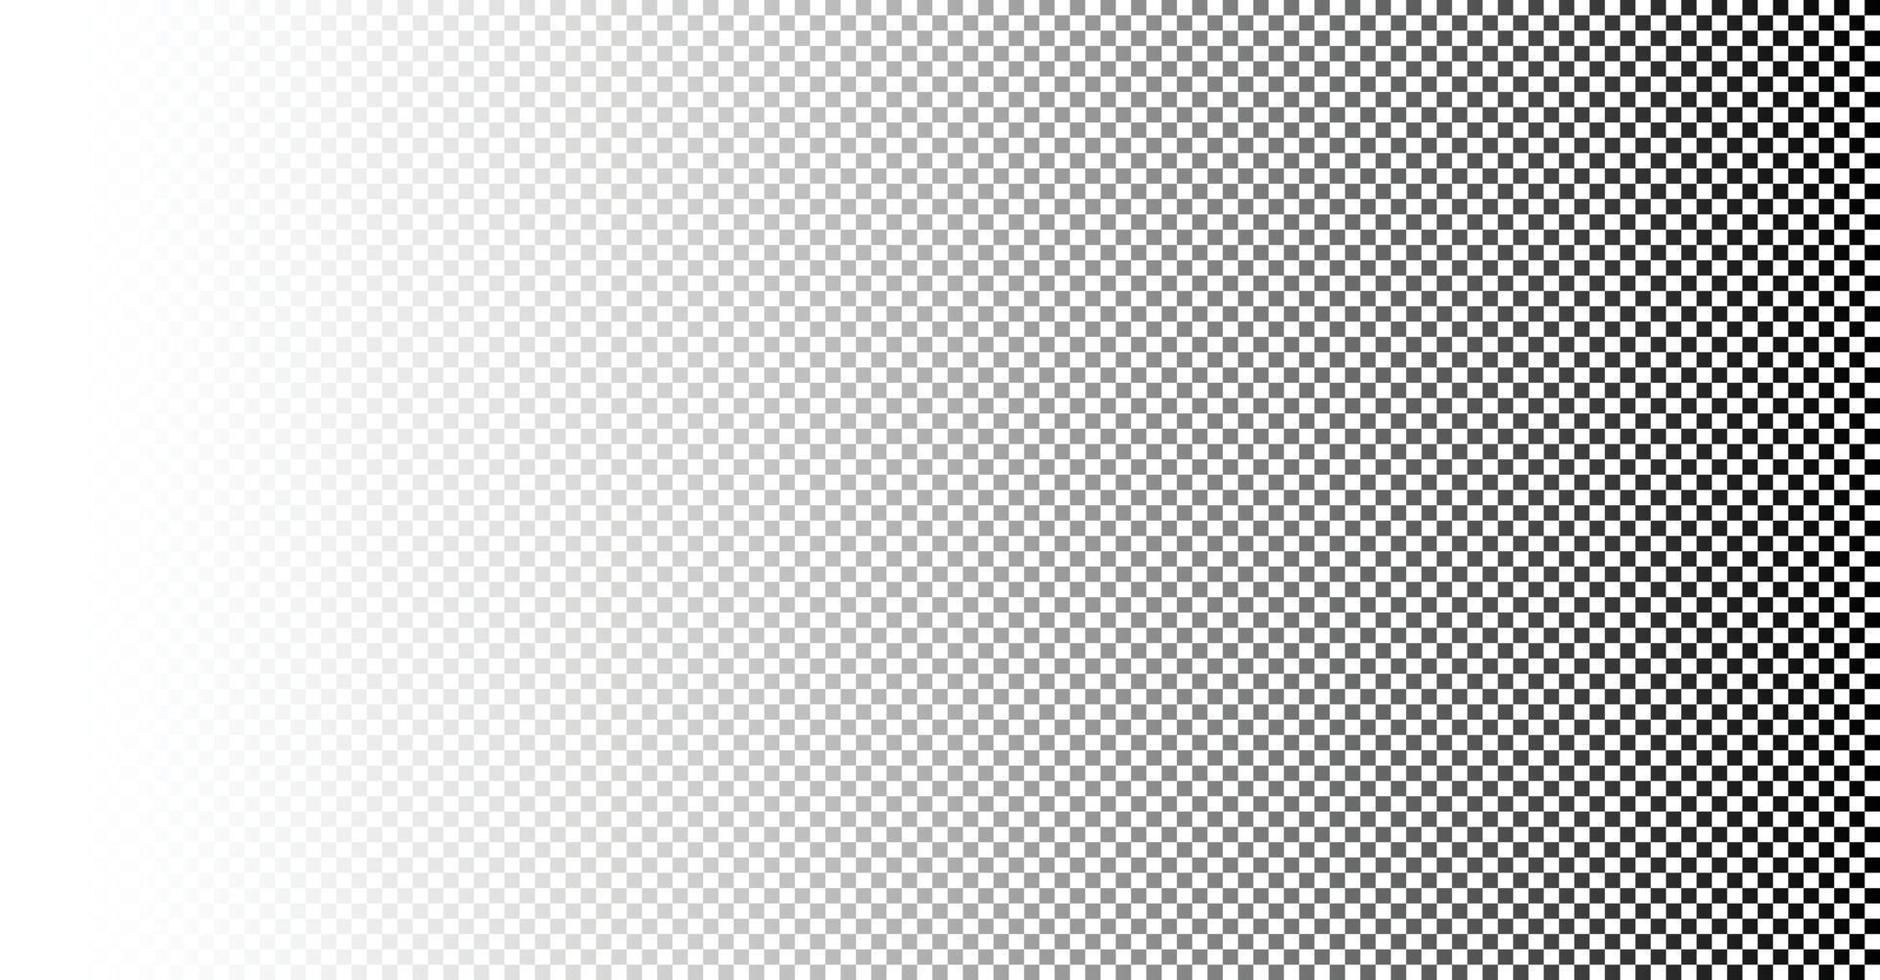 abstrato padrão geométrico branco com quadrados. projetar elemento de negócios para textura de fundo, cartazes, cartões, papéis de parede, cenários, painéis - ilustração vetorial vetor